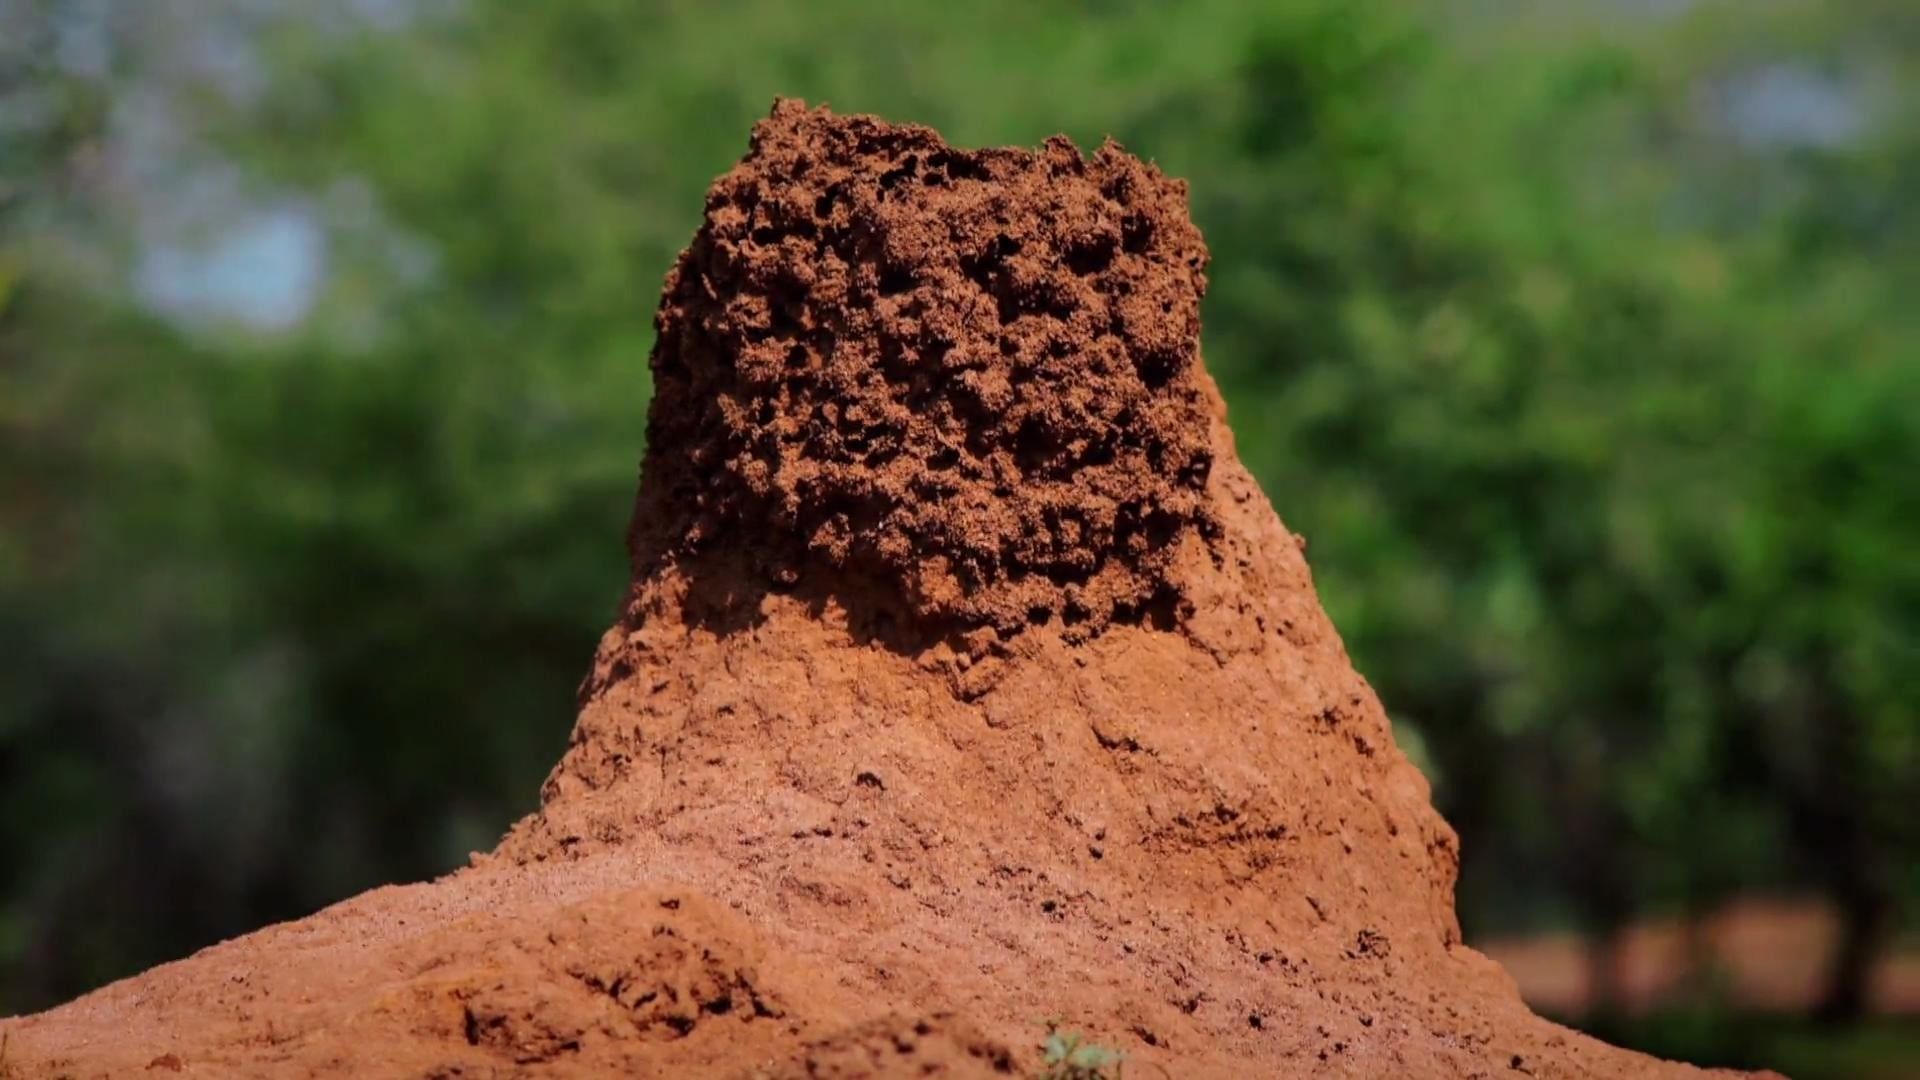 Cubierta de Termites: The Inner Sanctum